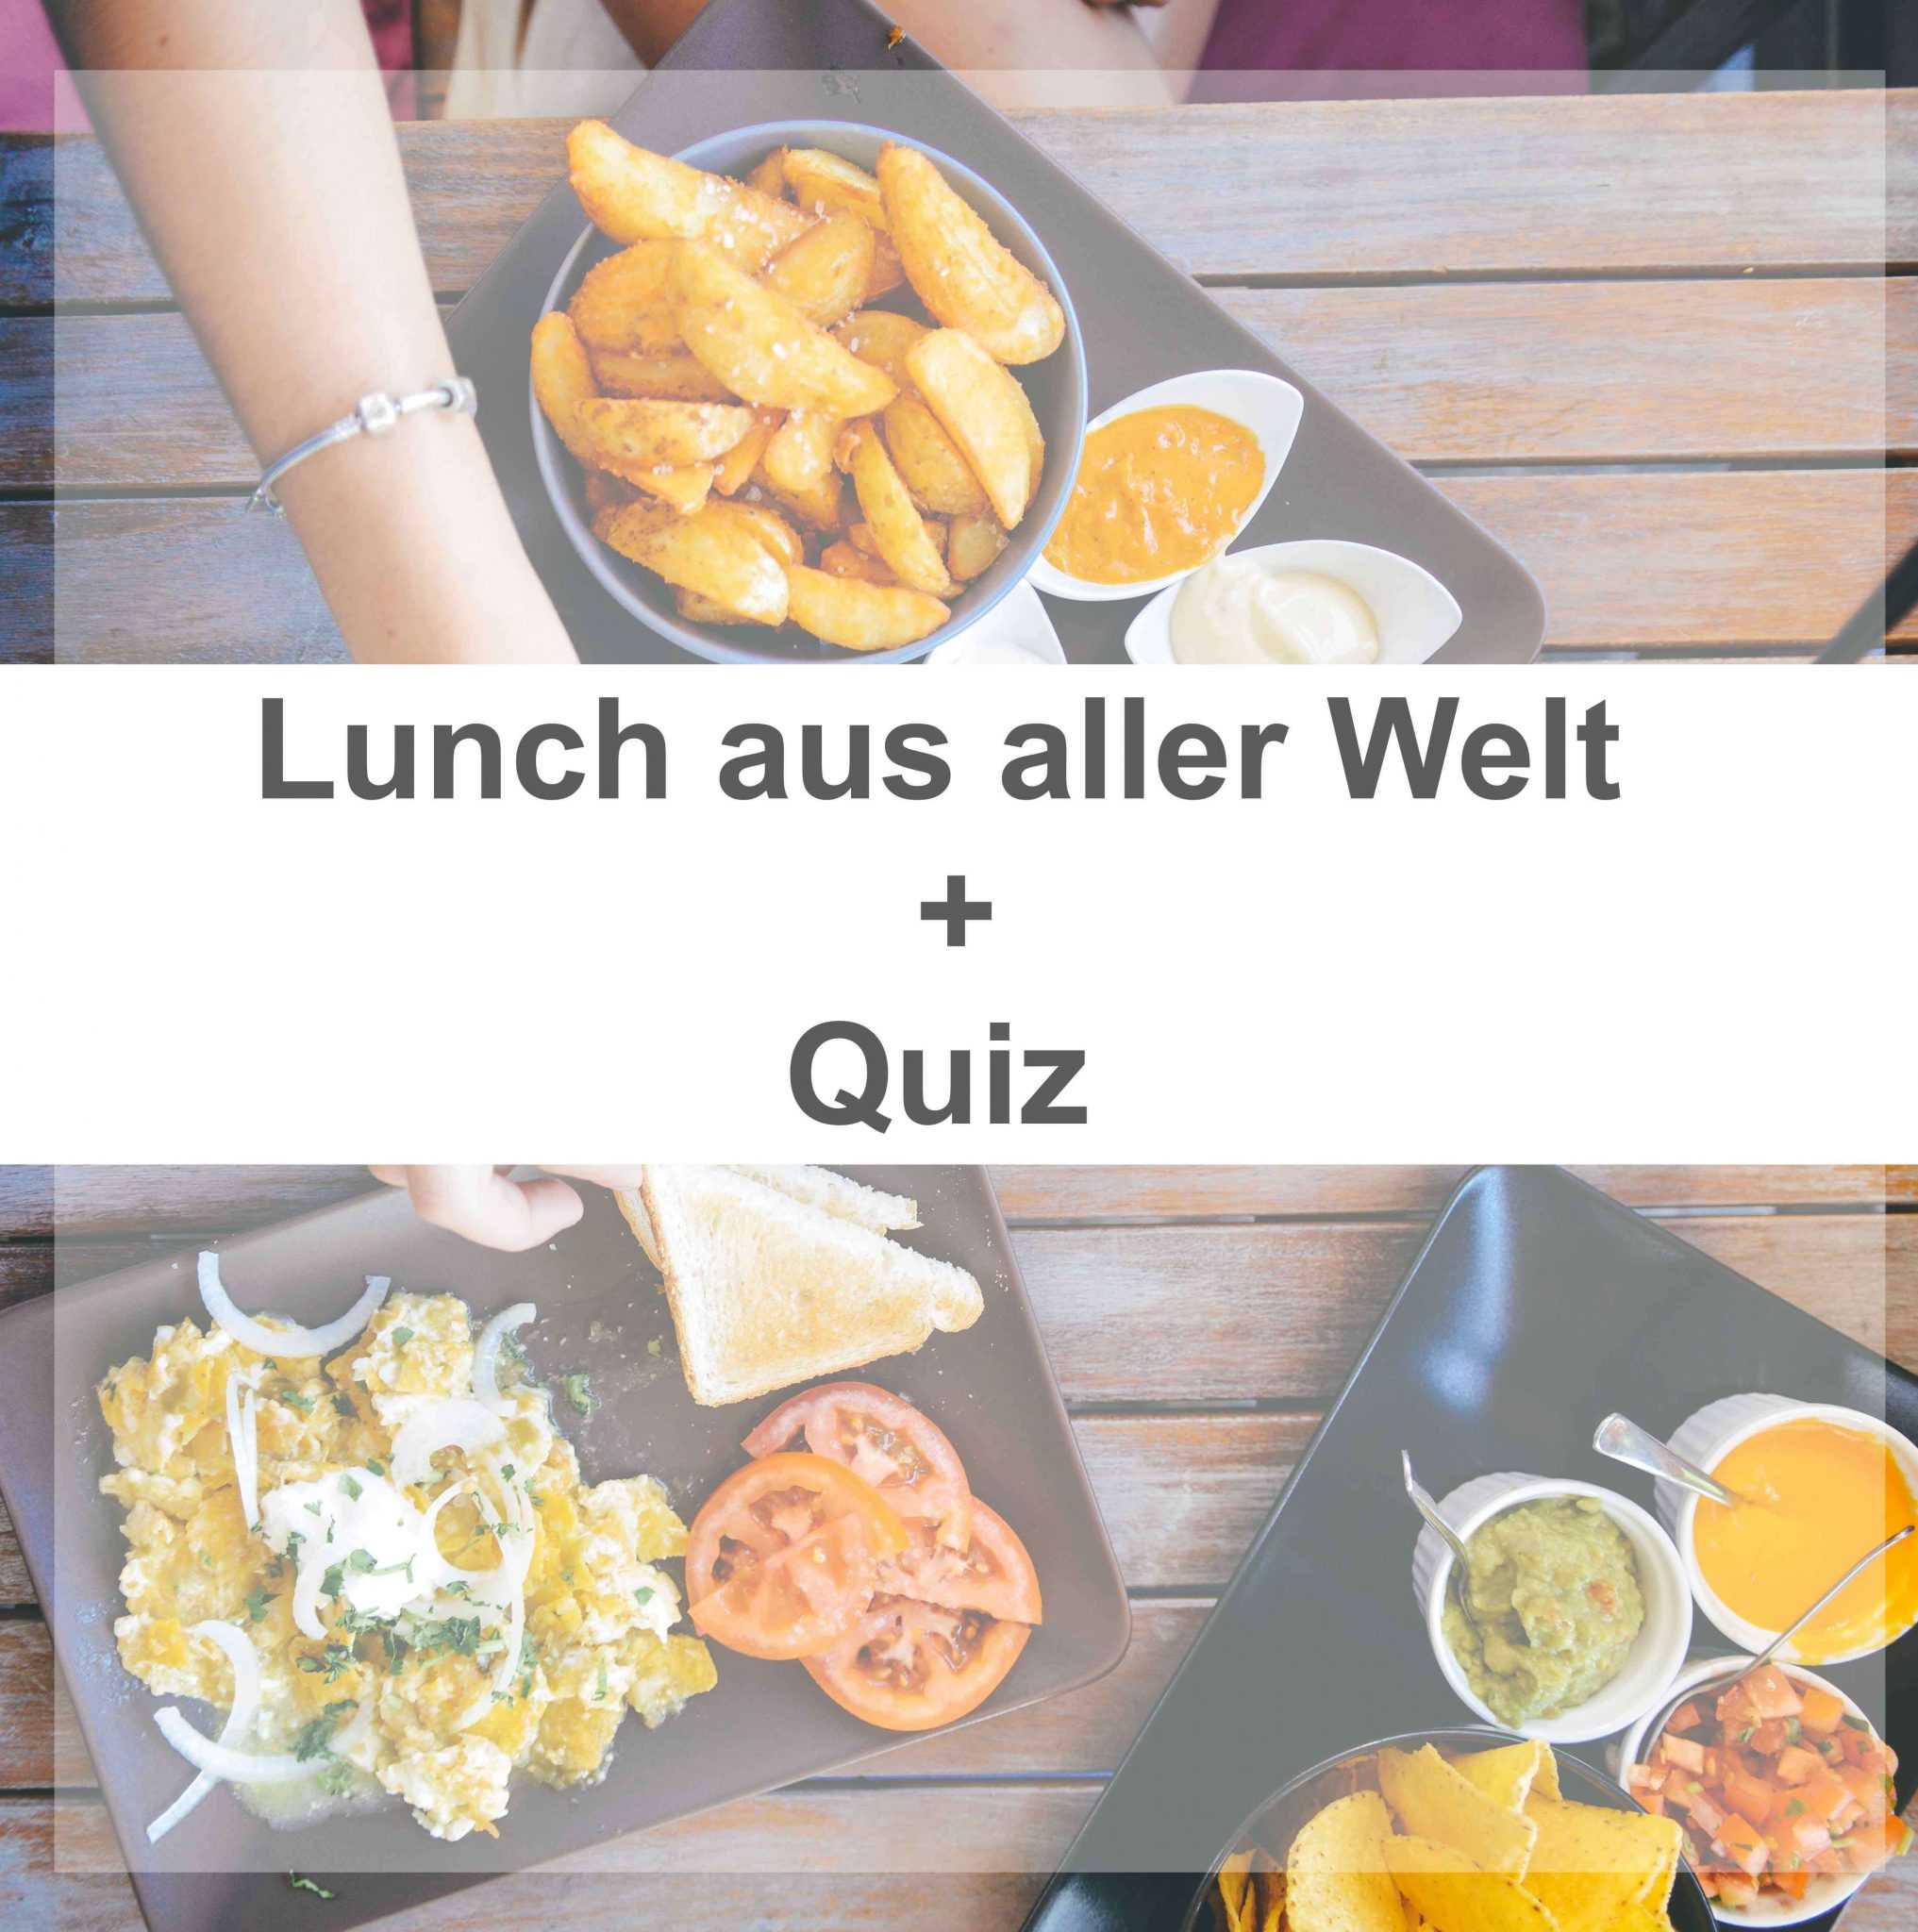 Lunch aus aller Welt + Quiz